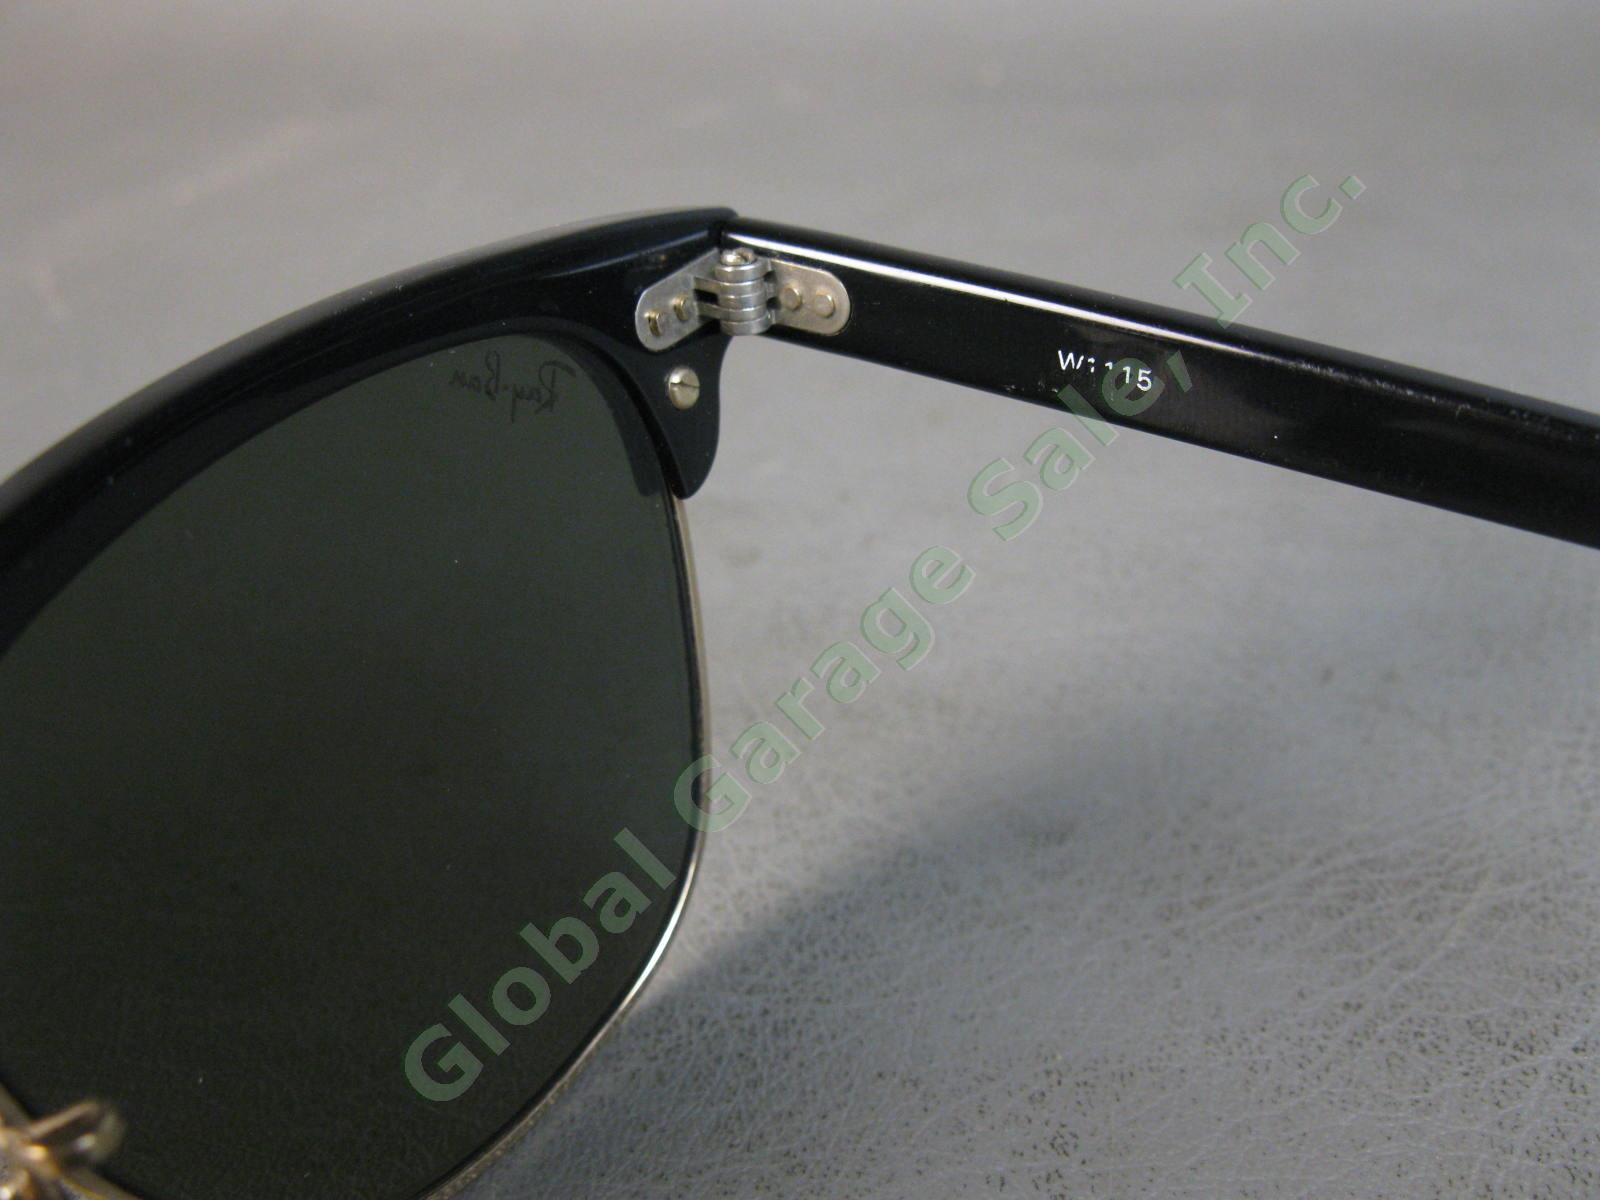 VTG B&L Ray-Ban ClubMaster Sunglasses Arista Ebony W1115 G15 RB3016 Bausch Lomb 6